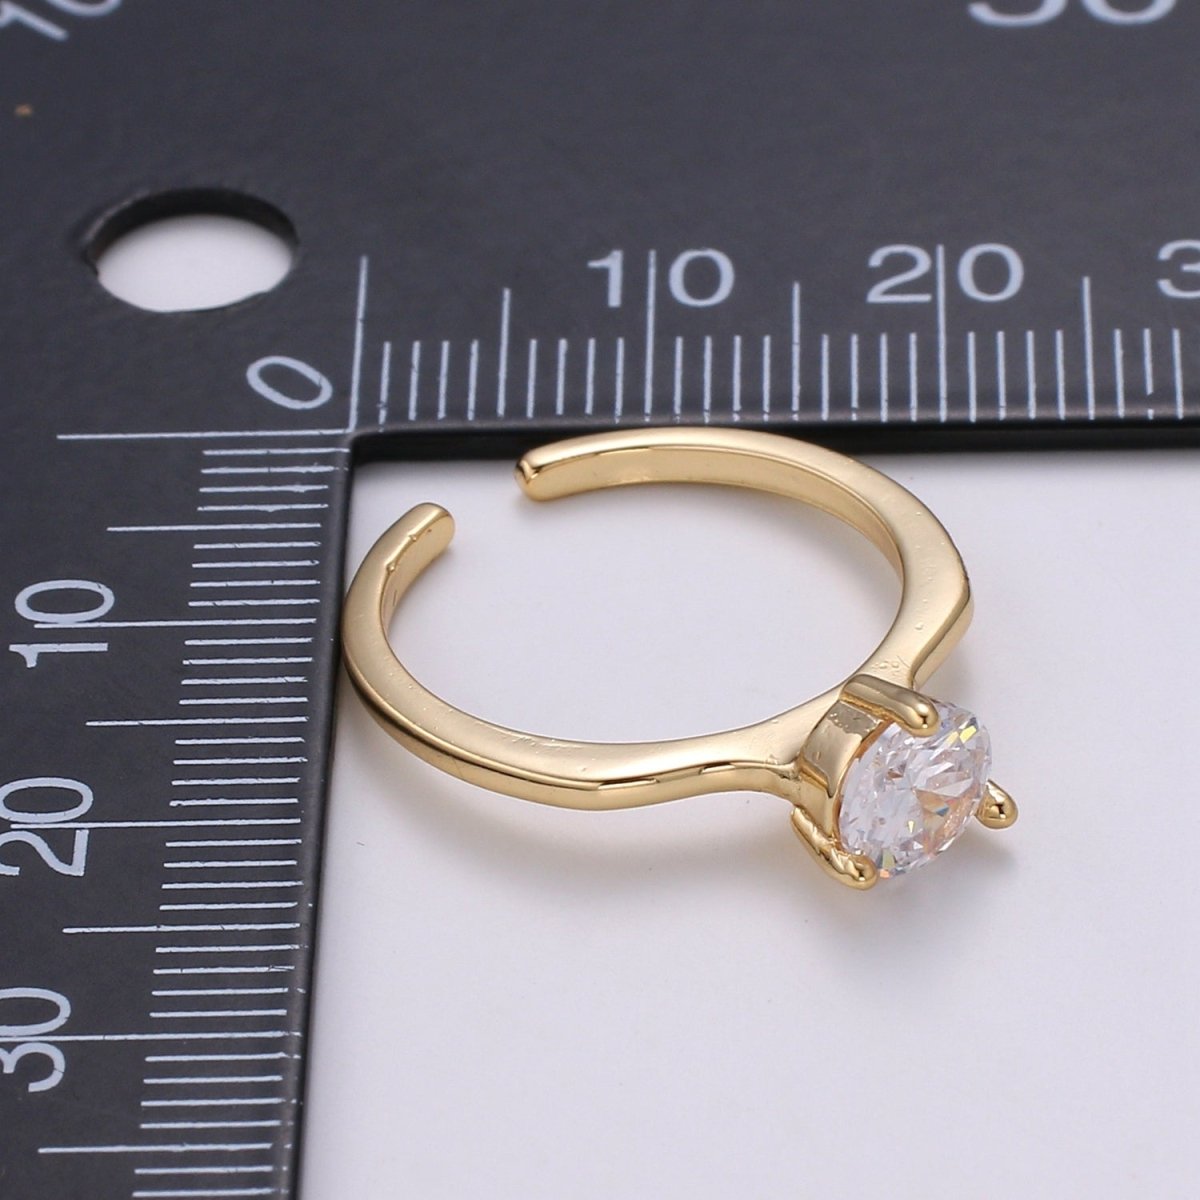 DEL-Elegant Round Crystal 18K Gold Filled Adjustable Ring - R273 - DLUXCA